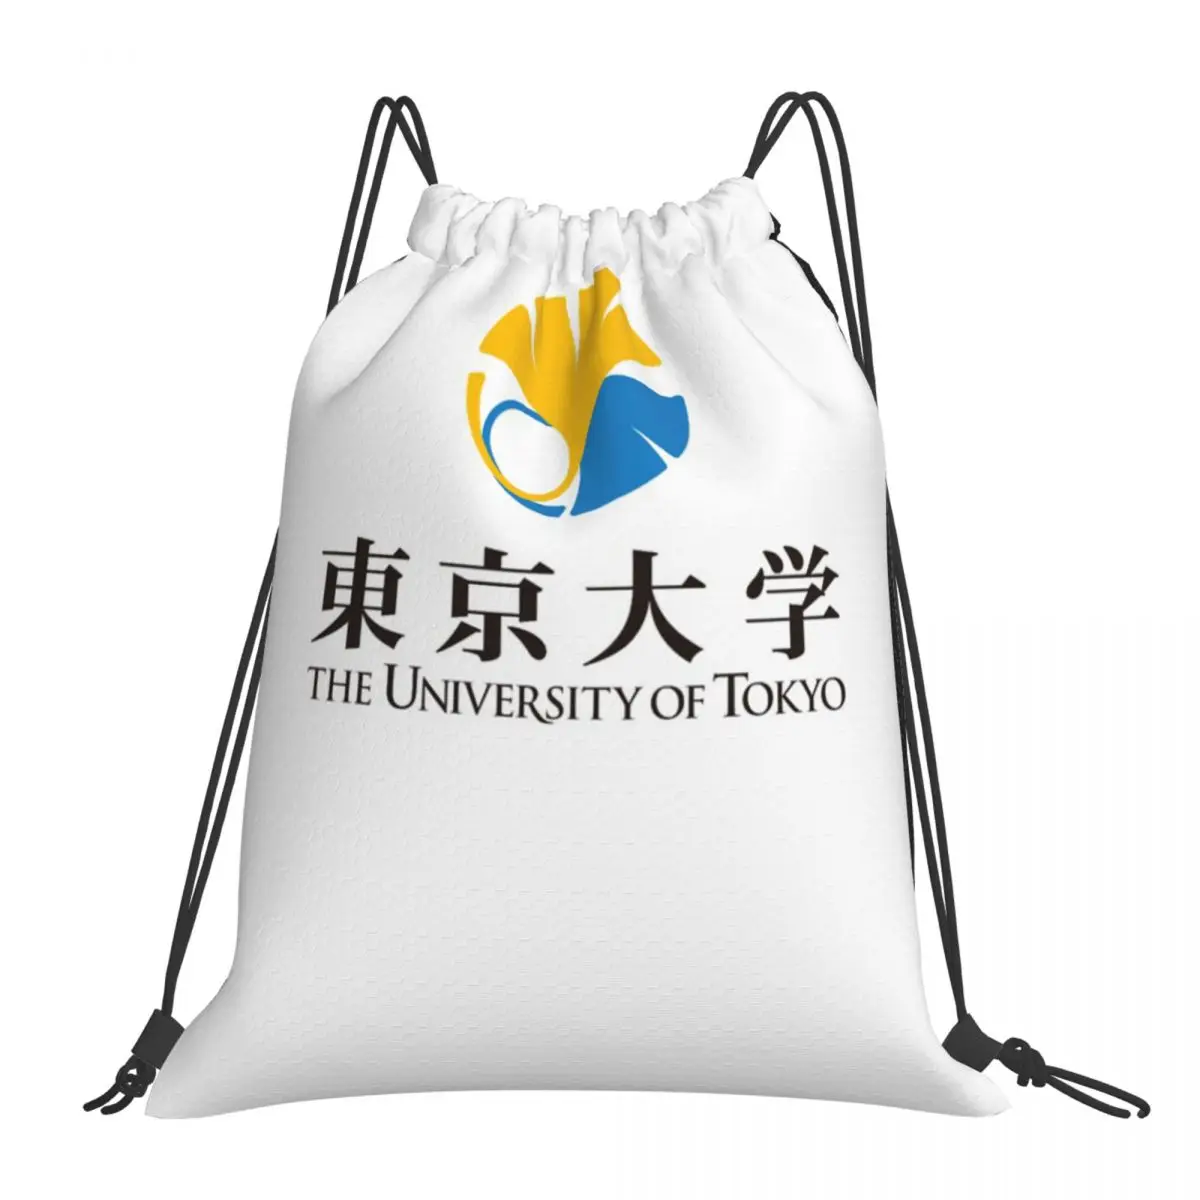 

Сумки на шнурке С Логотипом Университета Токио, рюкзаки, сумки, тканевые сумки, женский рюкзак, детский рюкзак